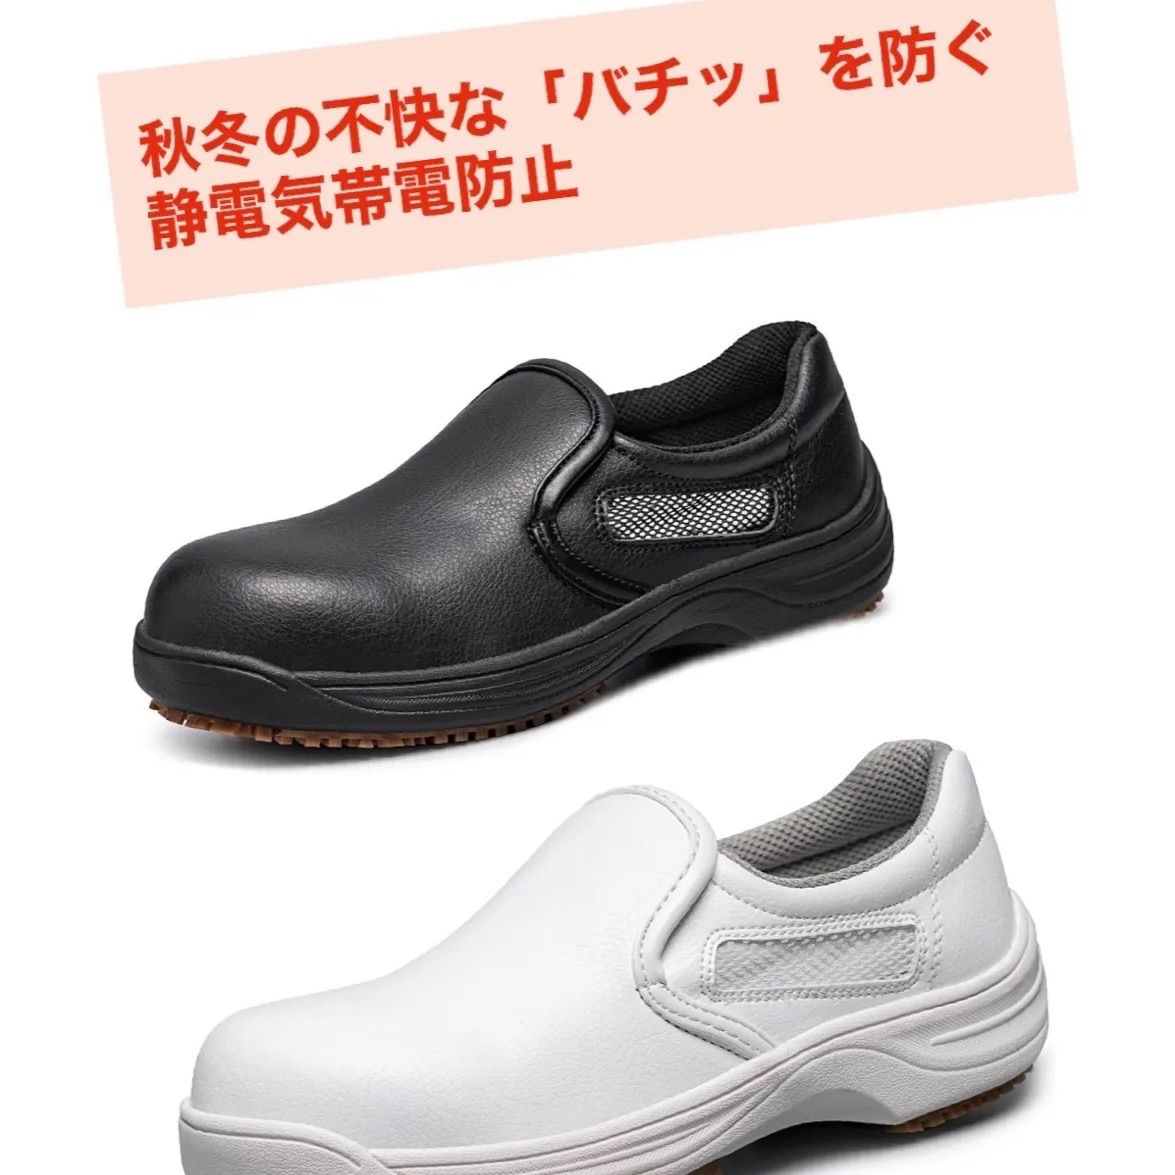 日本 28.0 クッキングシューズ コックシューズ レストラン 安全靴 厨房 軽作業